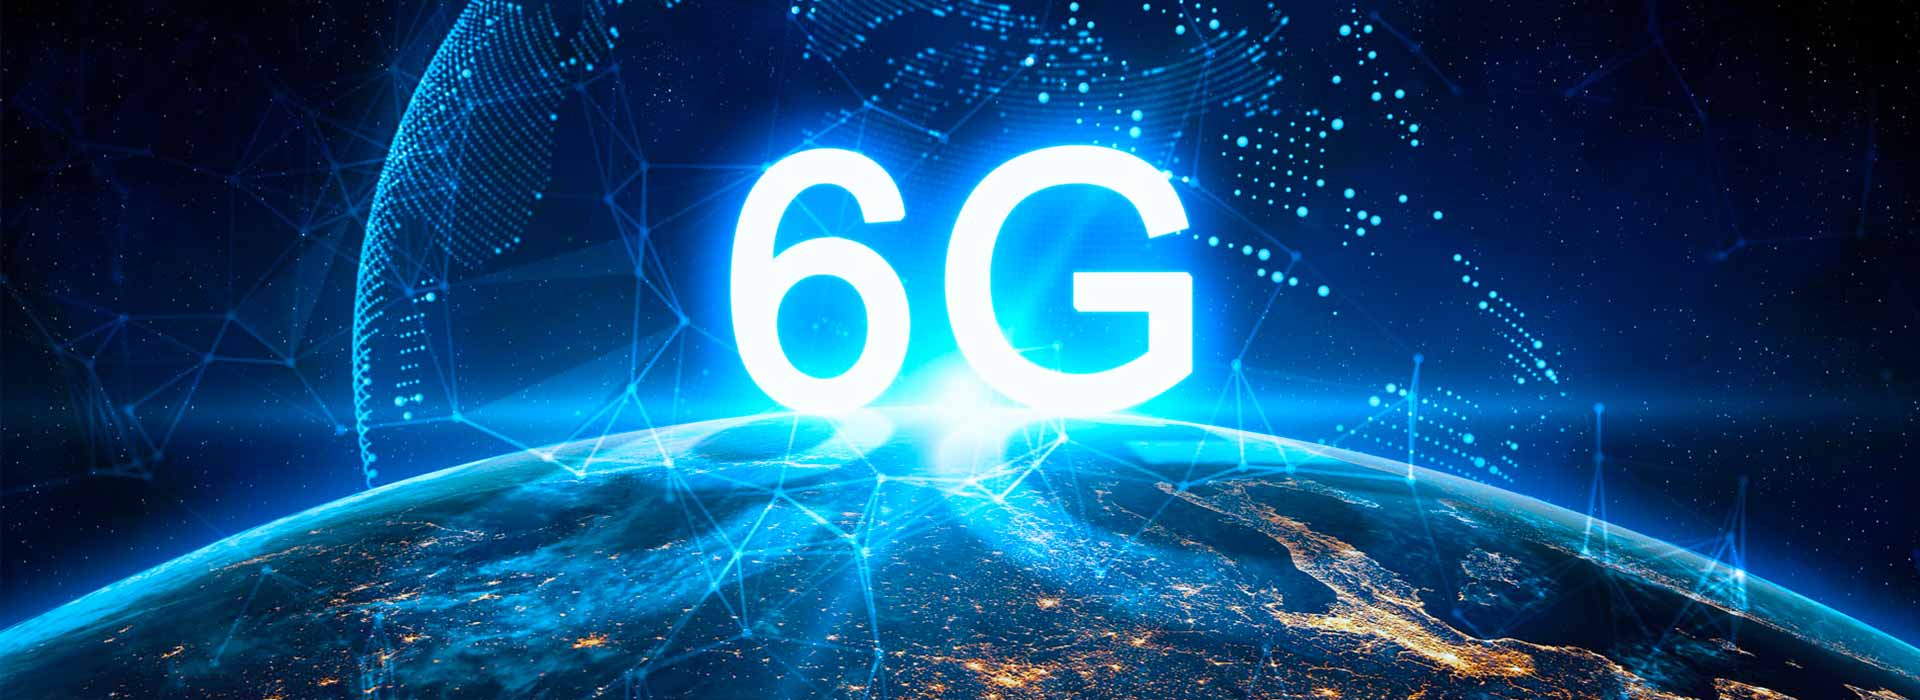 6G, una rivoluzione nella storia delle telecomunicazioni